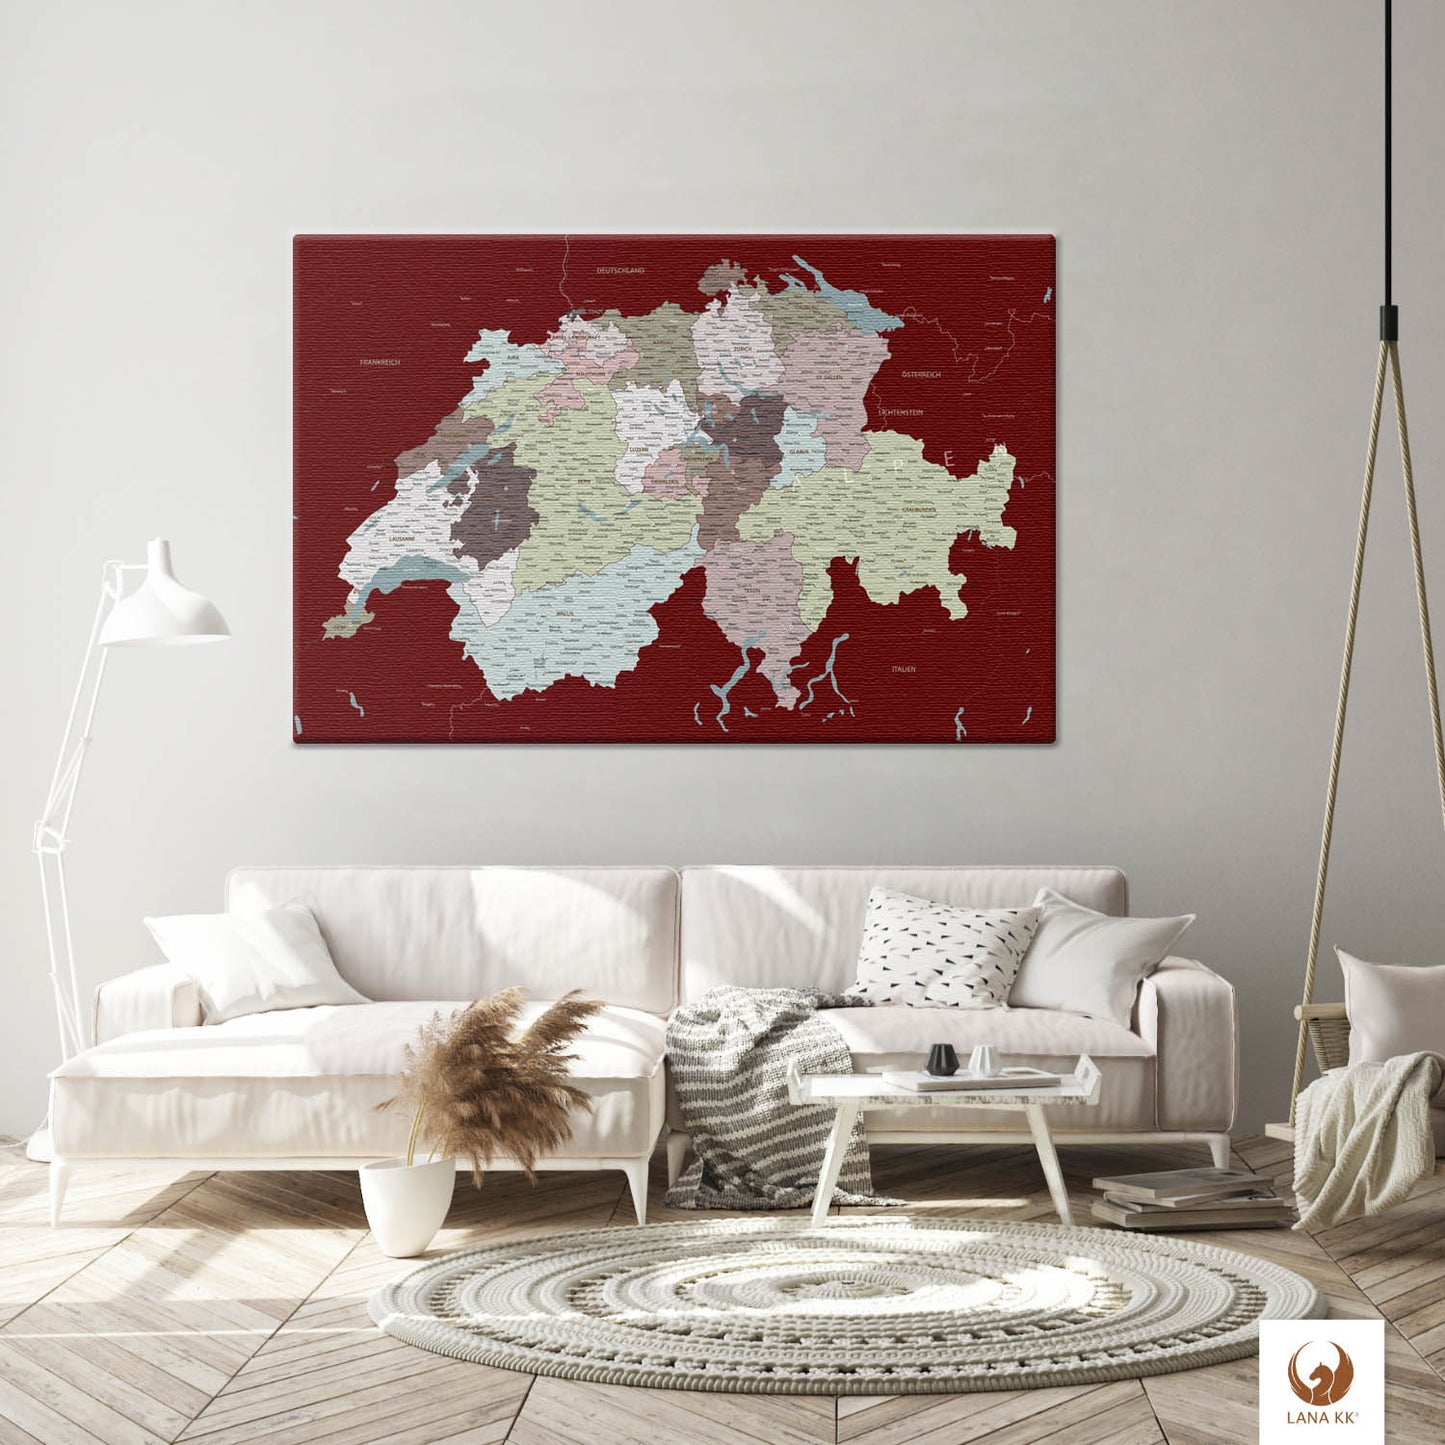 Die Welt als Zentrum Deiner Wohnung. Deine Schweizkarte Kolonialrot für sich mit ihren ausgewogenen Farben ideal in Dein Wohnkonzept ein.